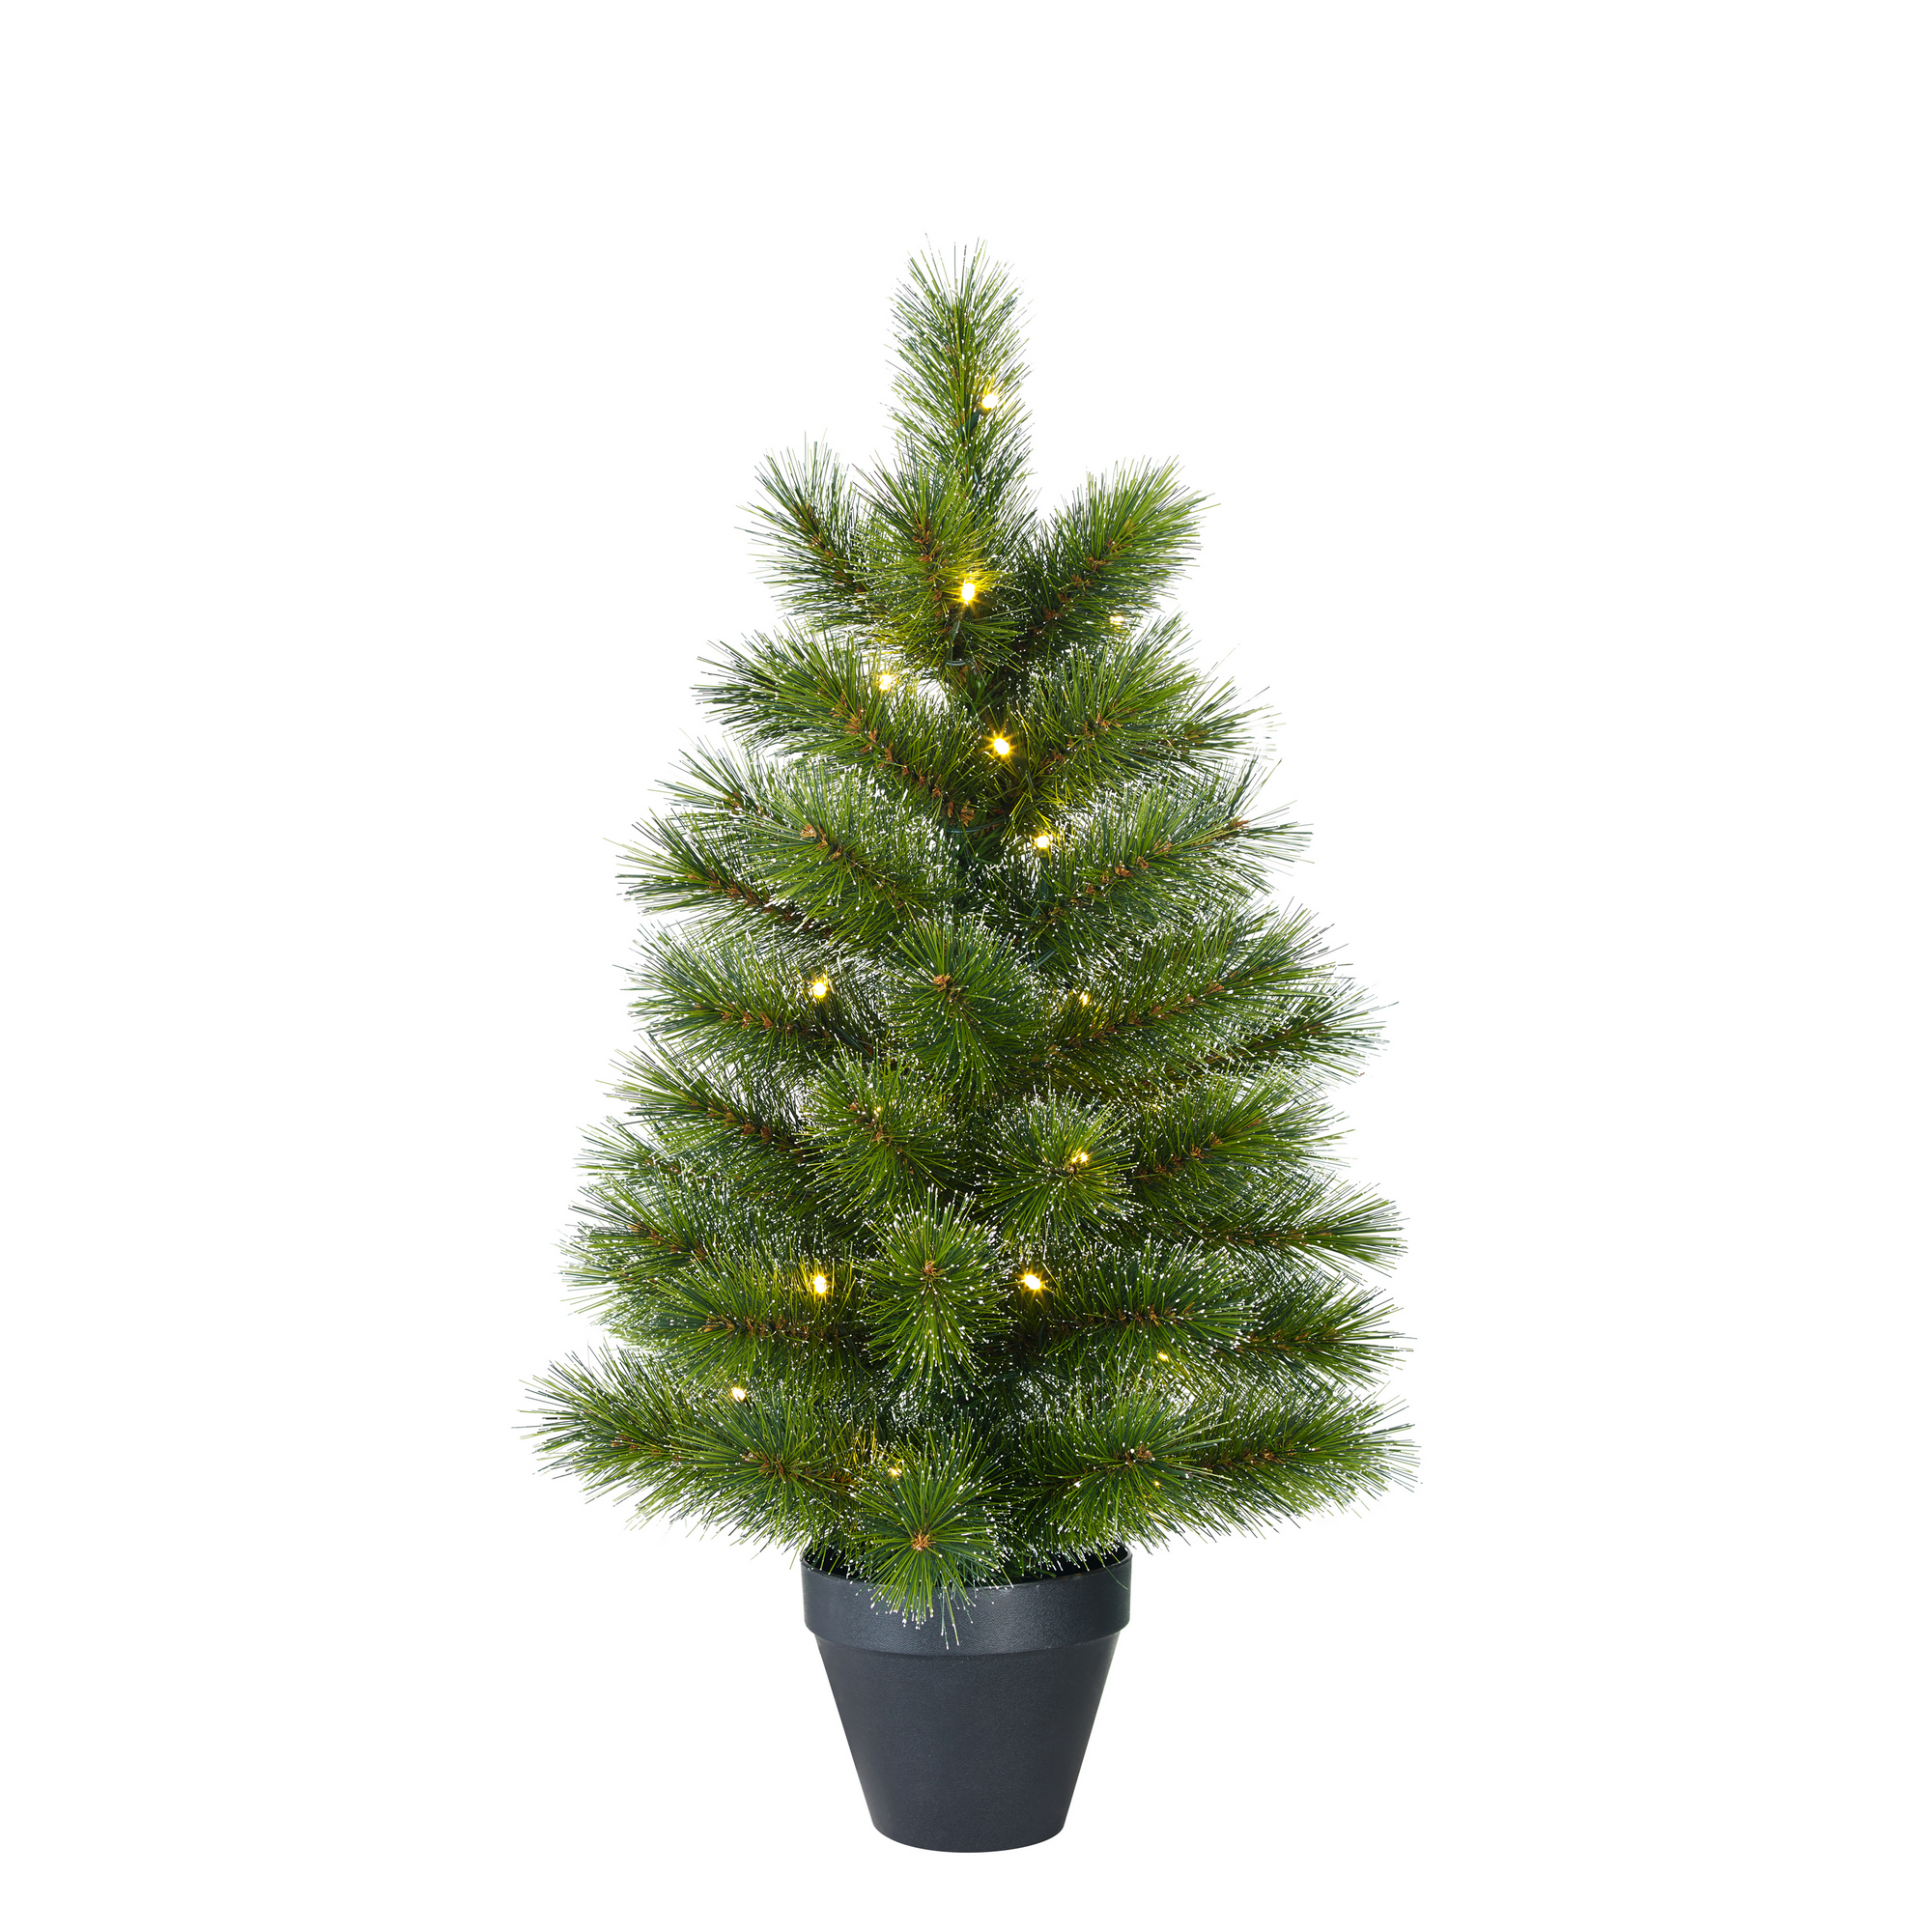 Künstlicher Weihnachtsbaum 'Jasper' grün 90 cm mit LED-Beleuchtung + product picture